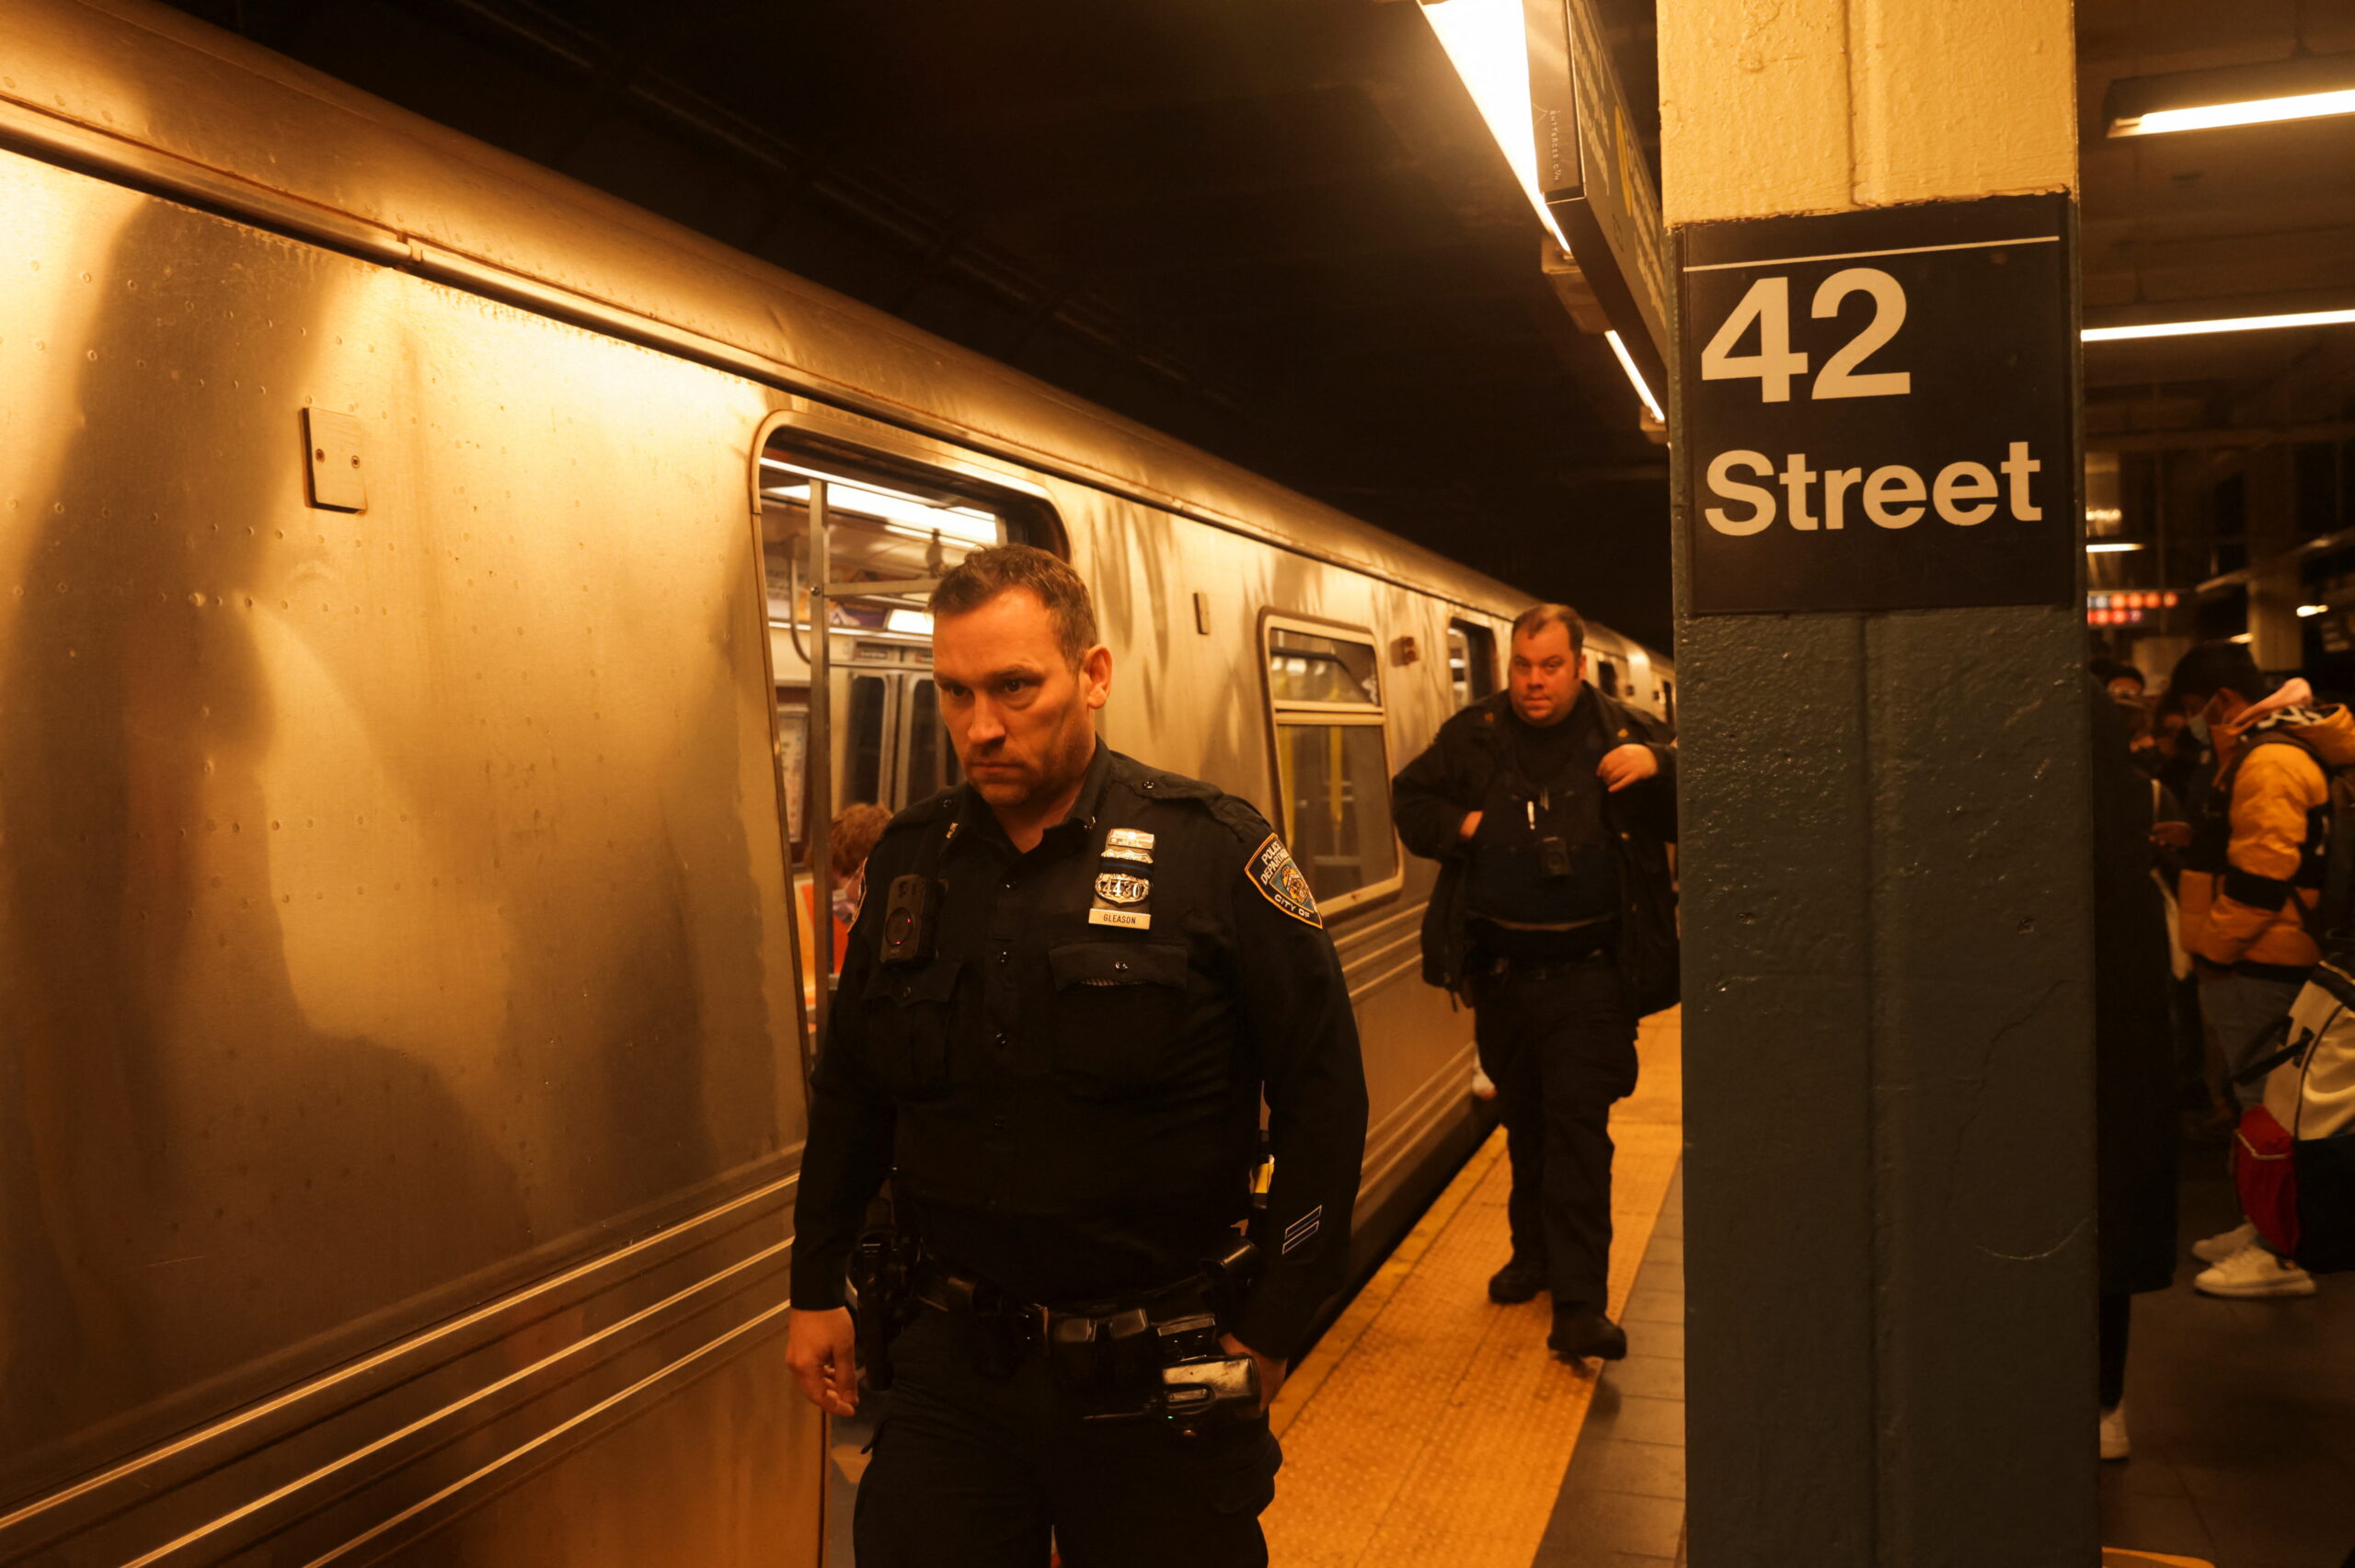 Полиция и сотрудники службы безопасности патрулируют метро Манхэттена после стрельбы на станции метро в Бруклине. Нью-Йорк, 12 апреля 2022 года © Jeenah Moon / Reuters / Scanpix / Leta